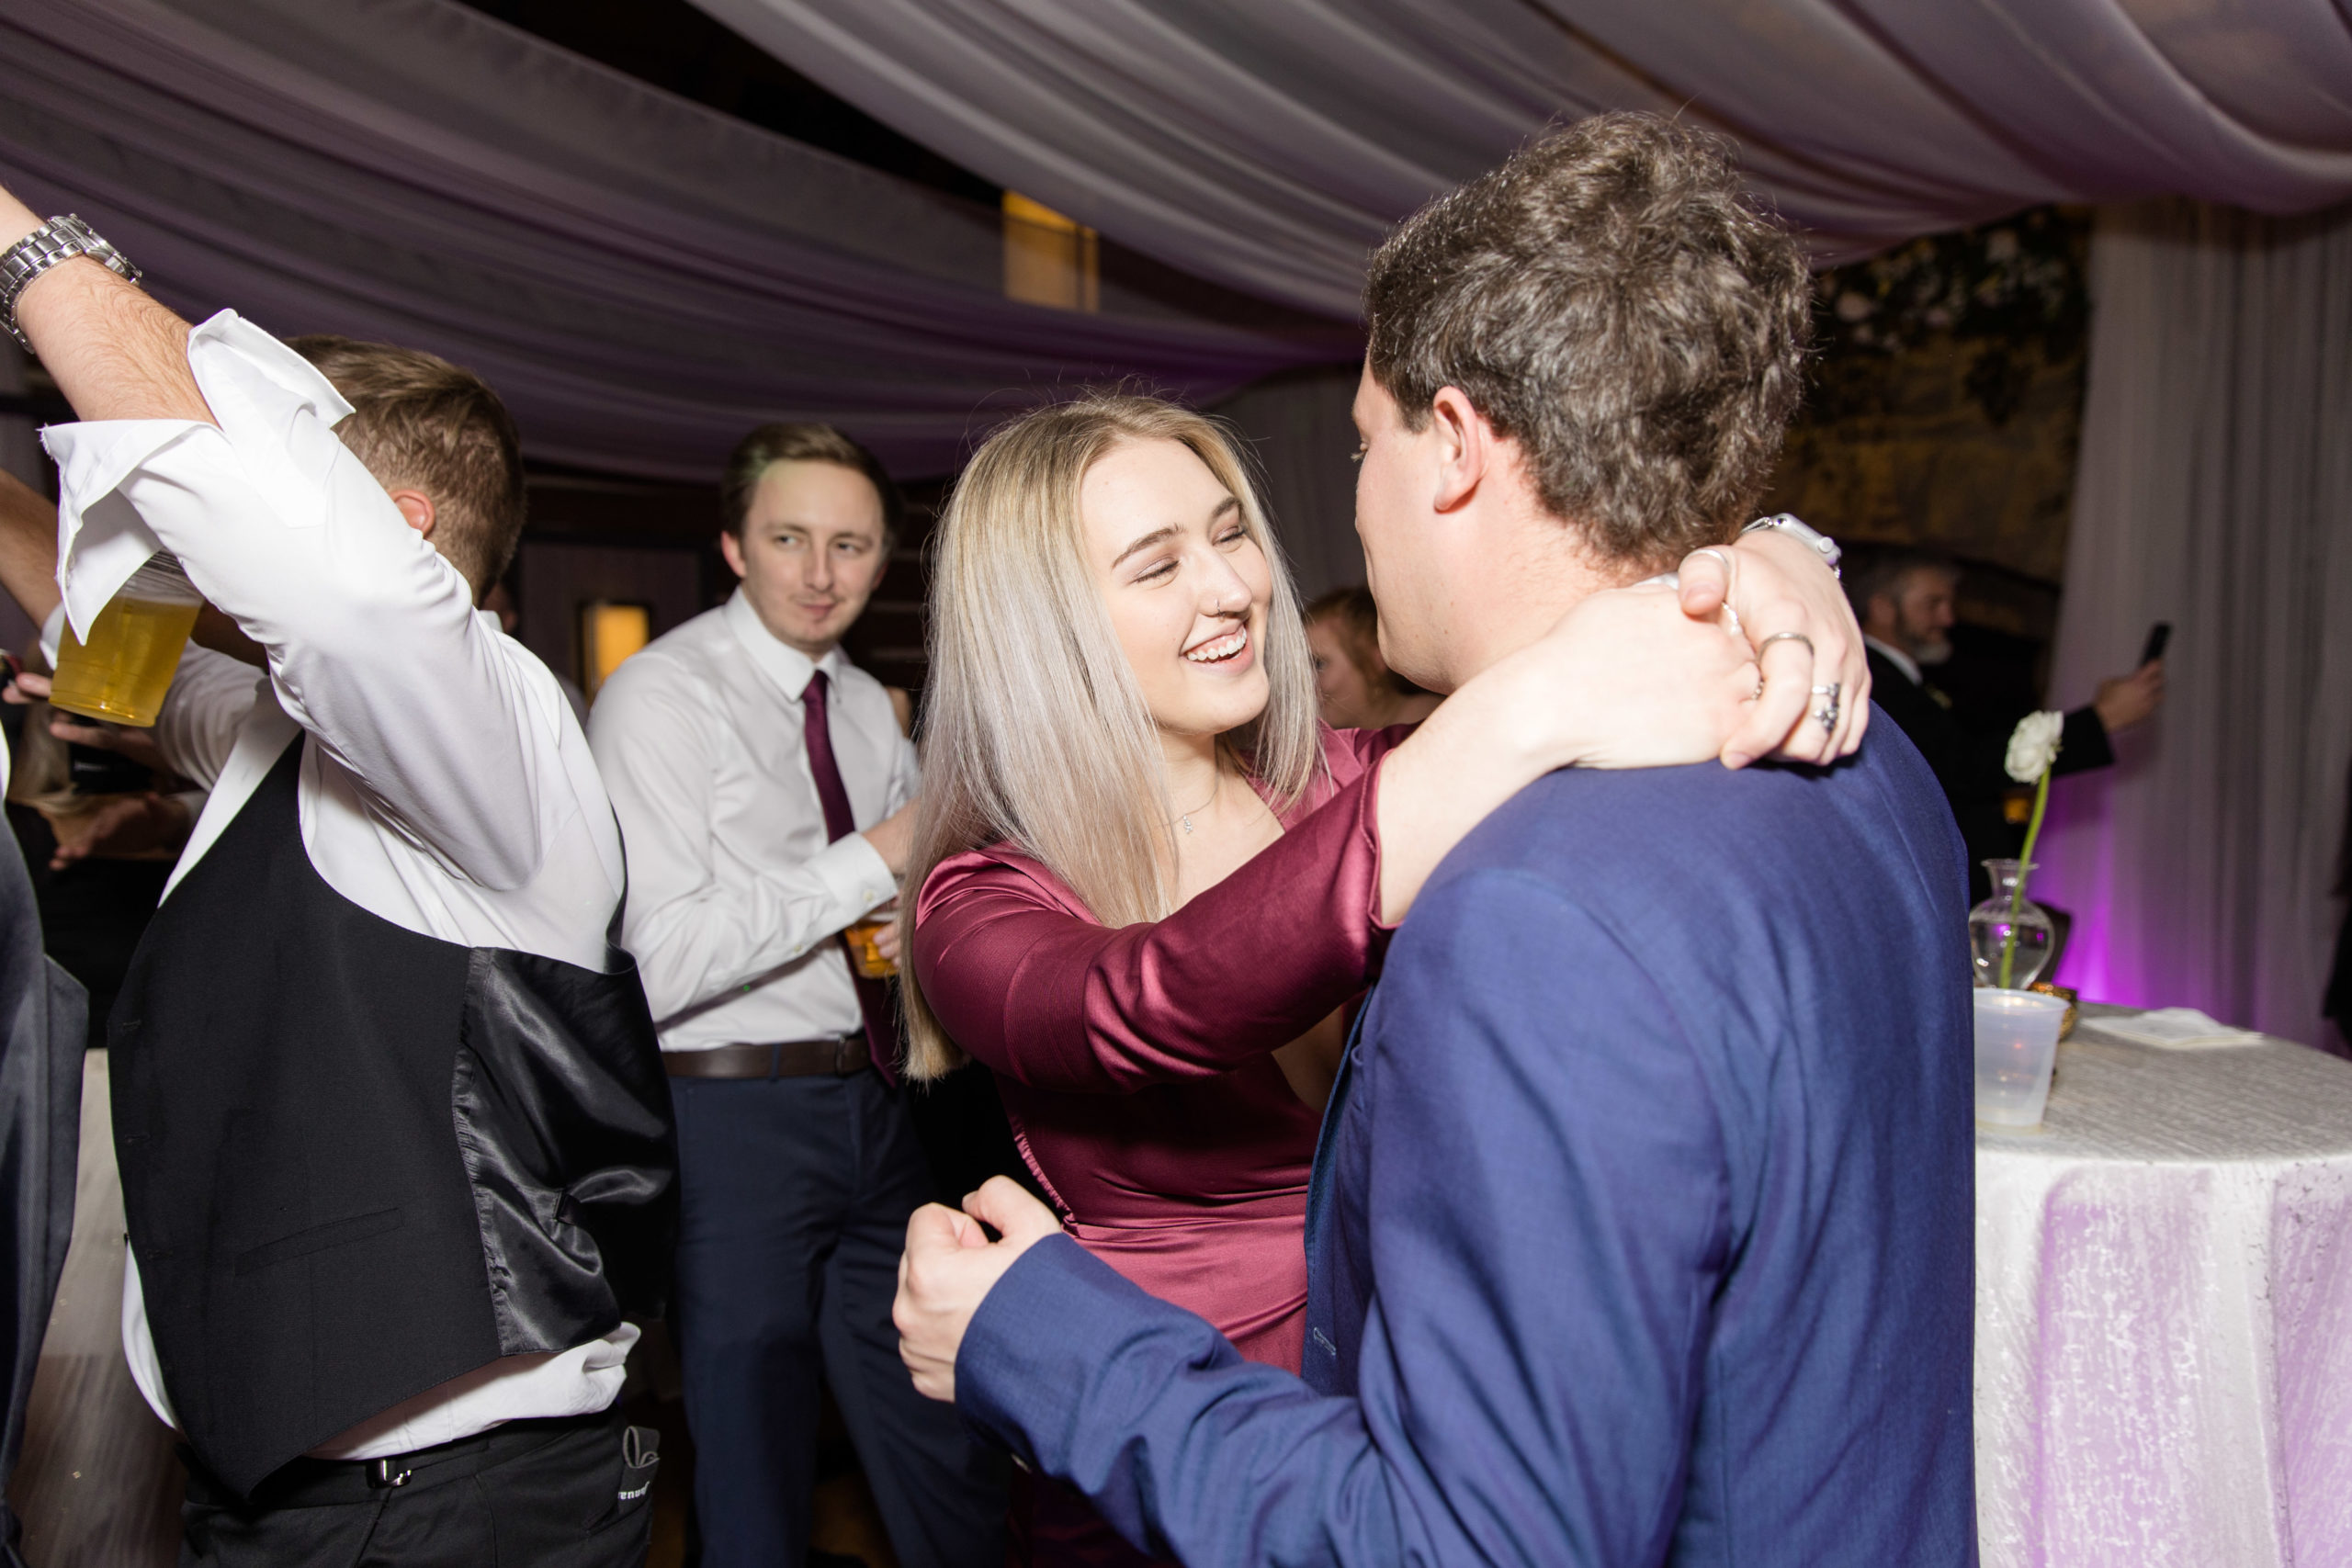 Couple dances during reception.